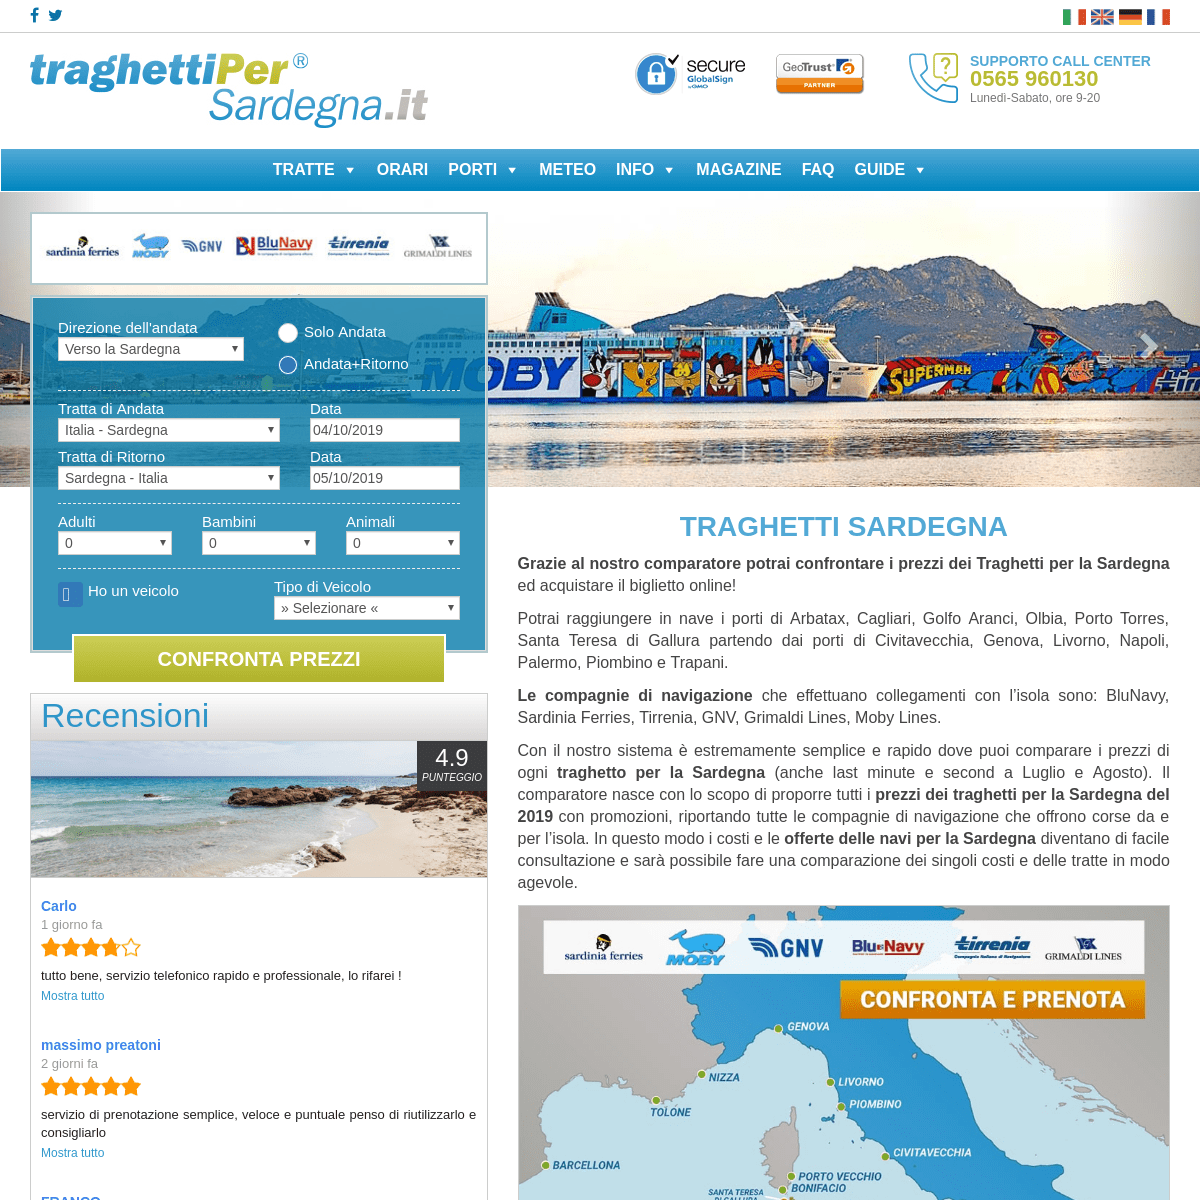 Traghetti Sardegna: Scopri le offertissime 2019 e confronta i prezzi!